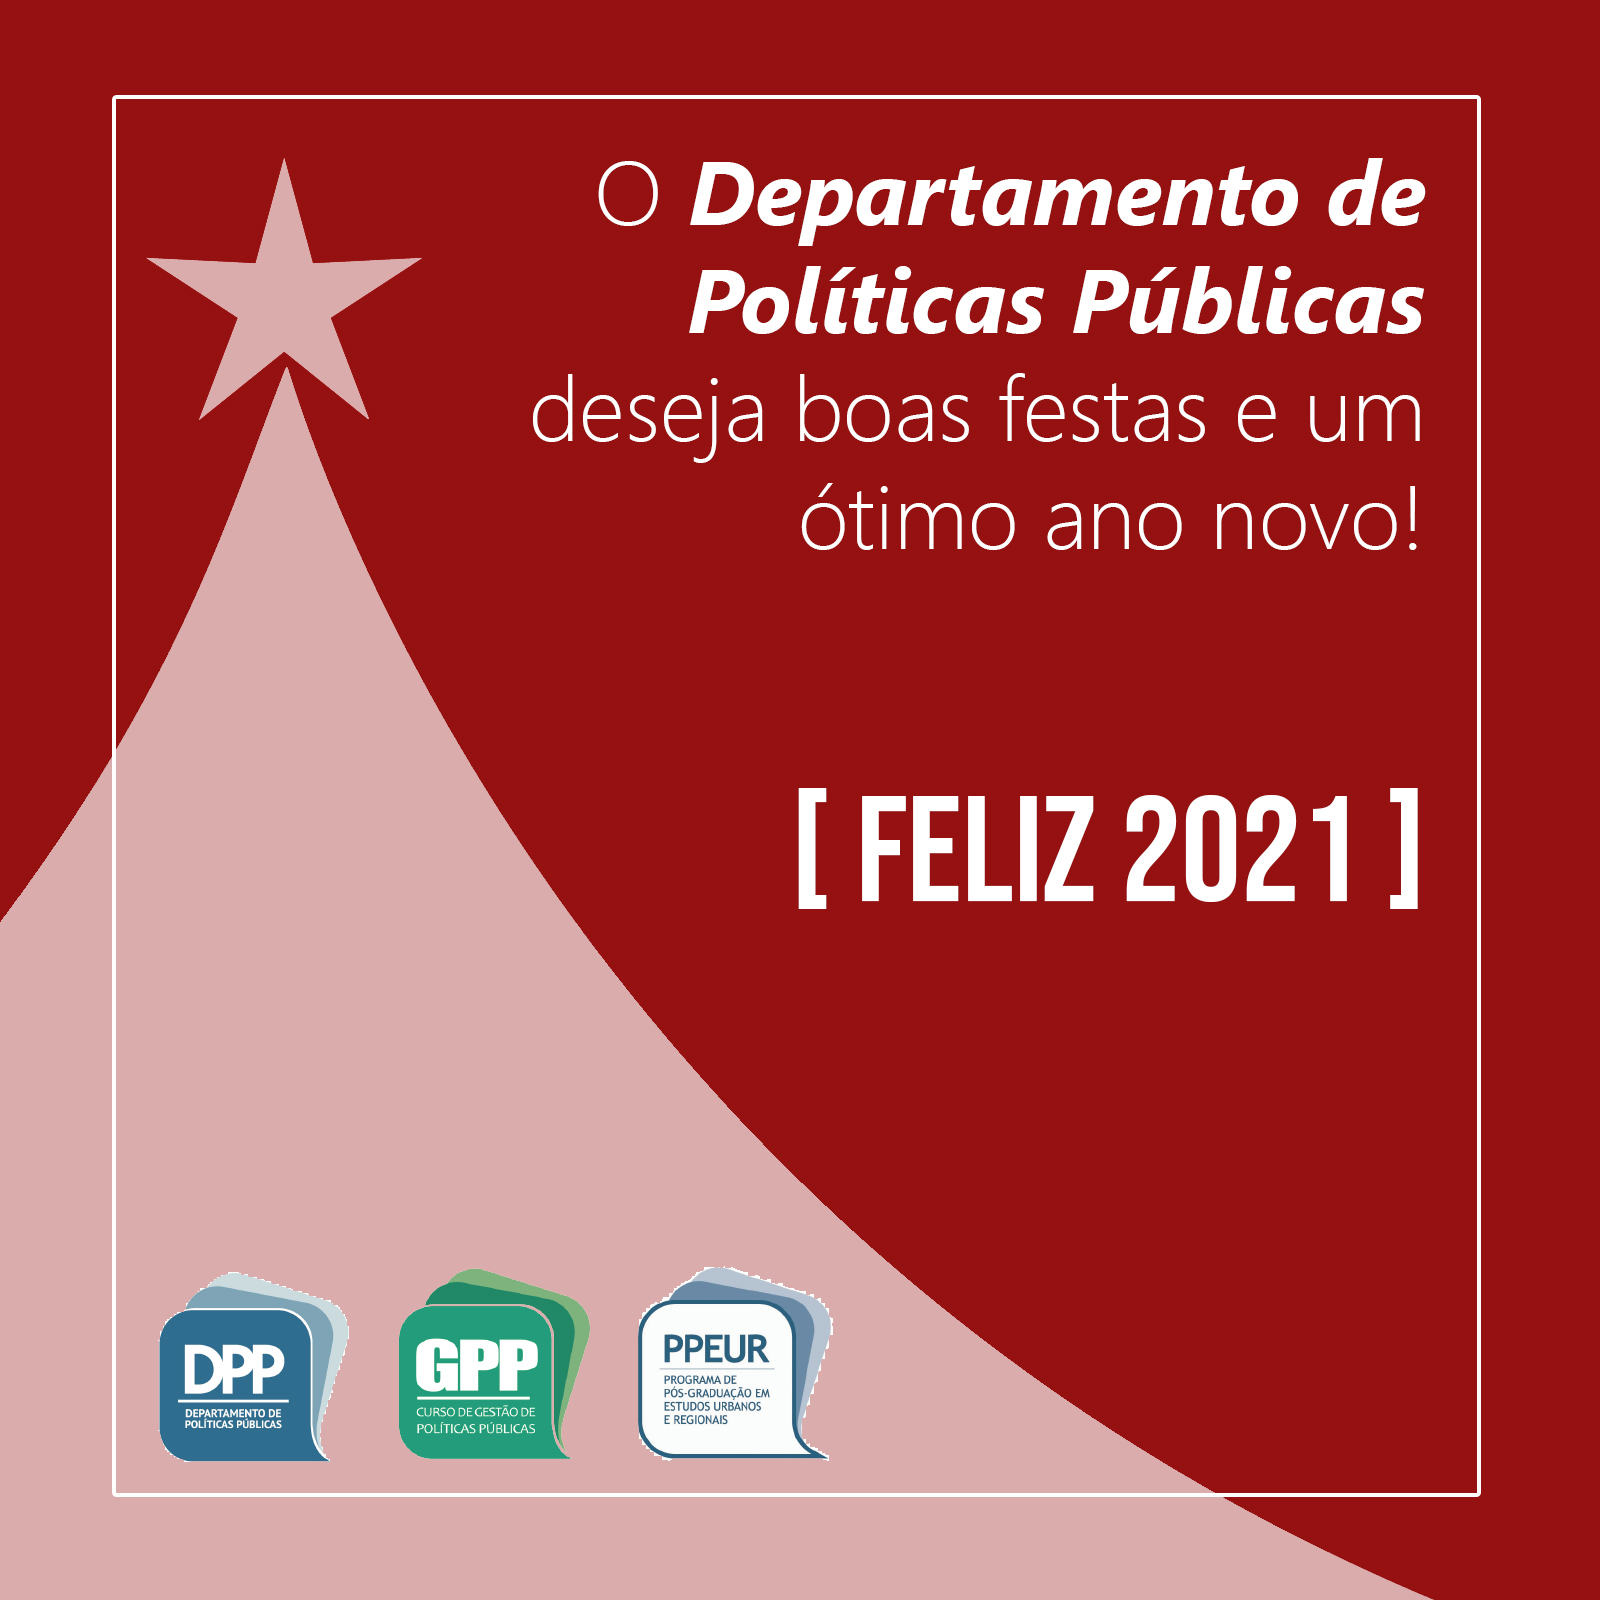 O DPP Deseja Boas Festas E Feliz 2021